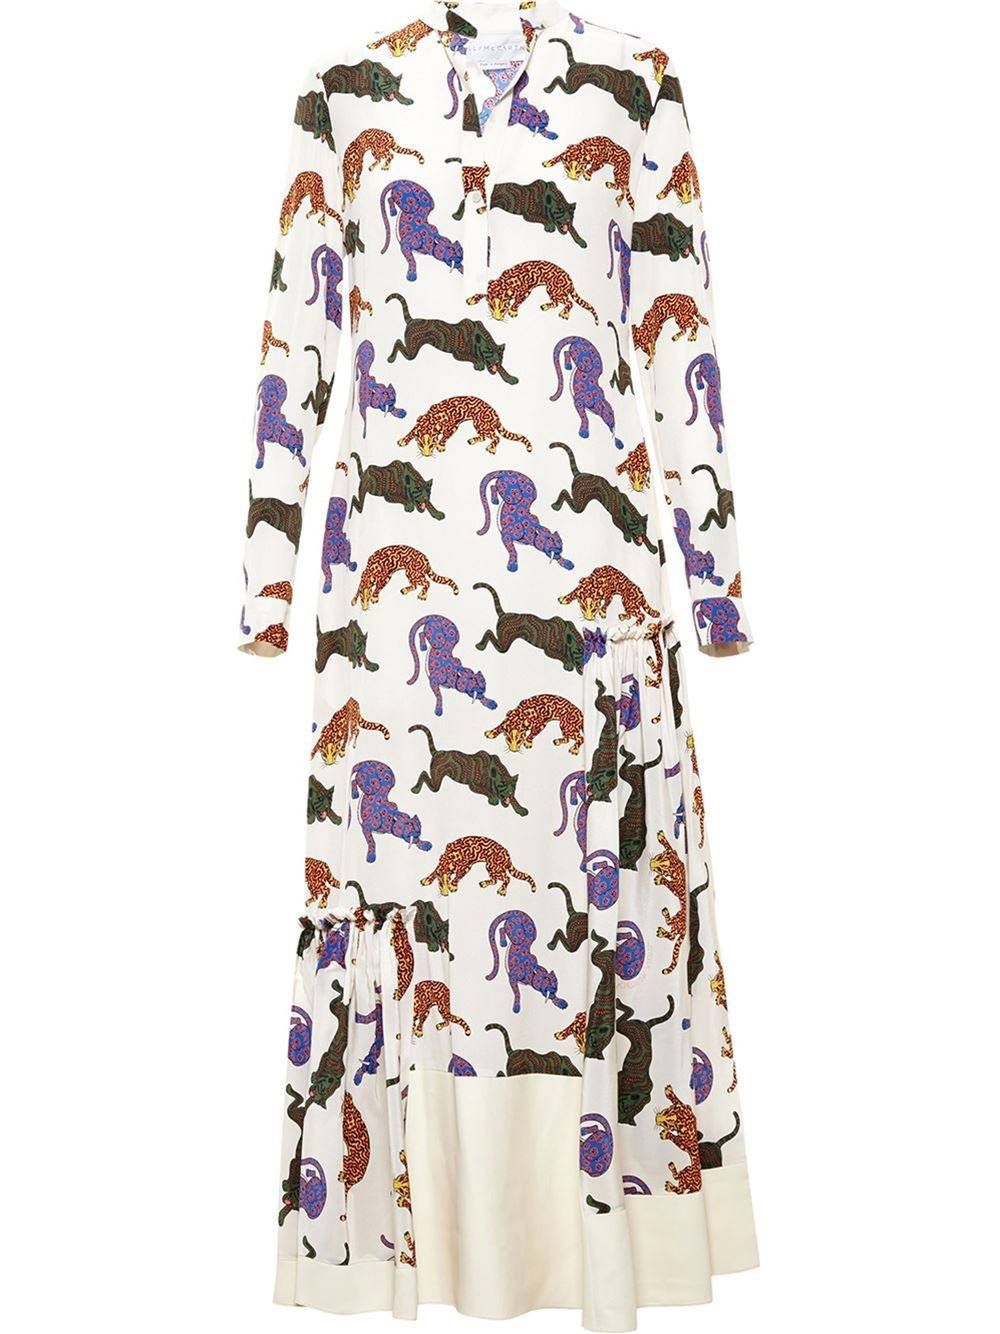 Sukienka, Stella McCartney, 570 funtów